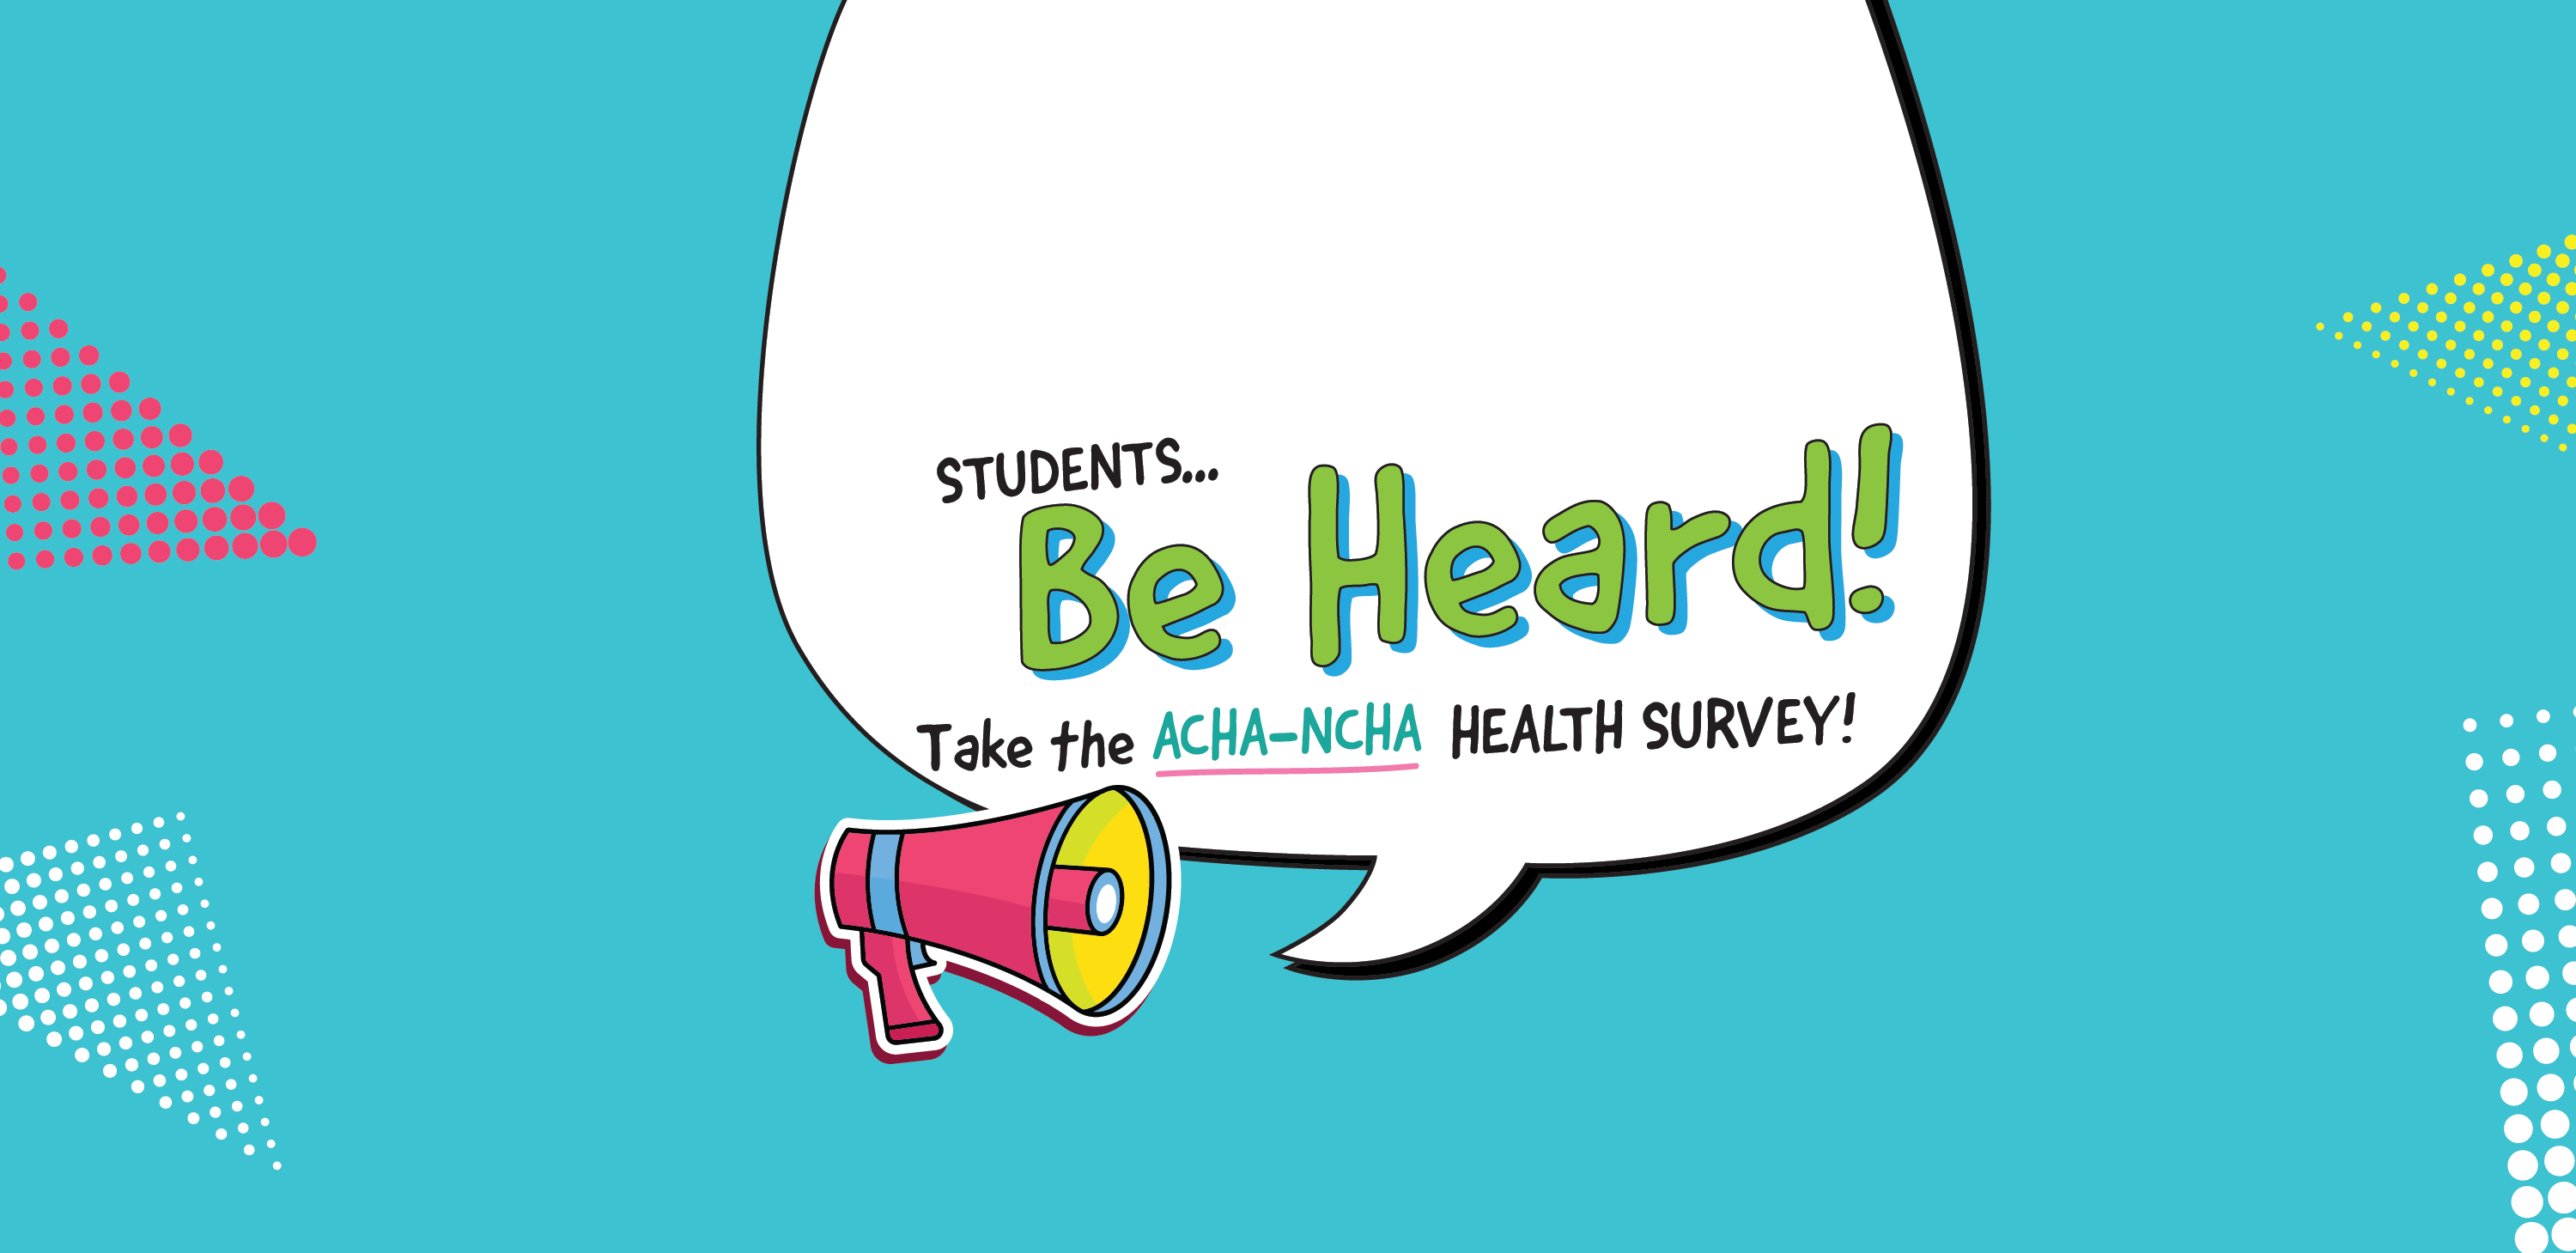 Students... Be Heard! Take the ACHA-NCHA Health Survey